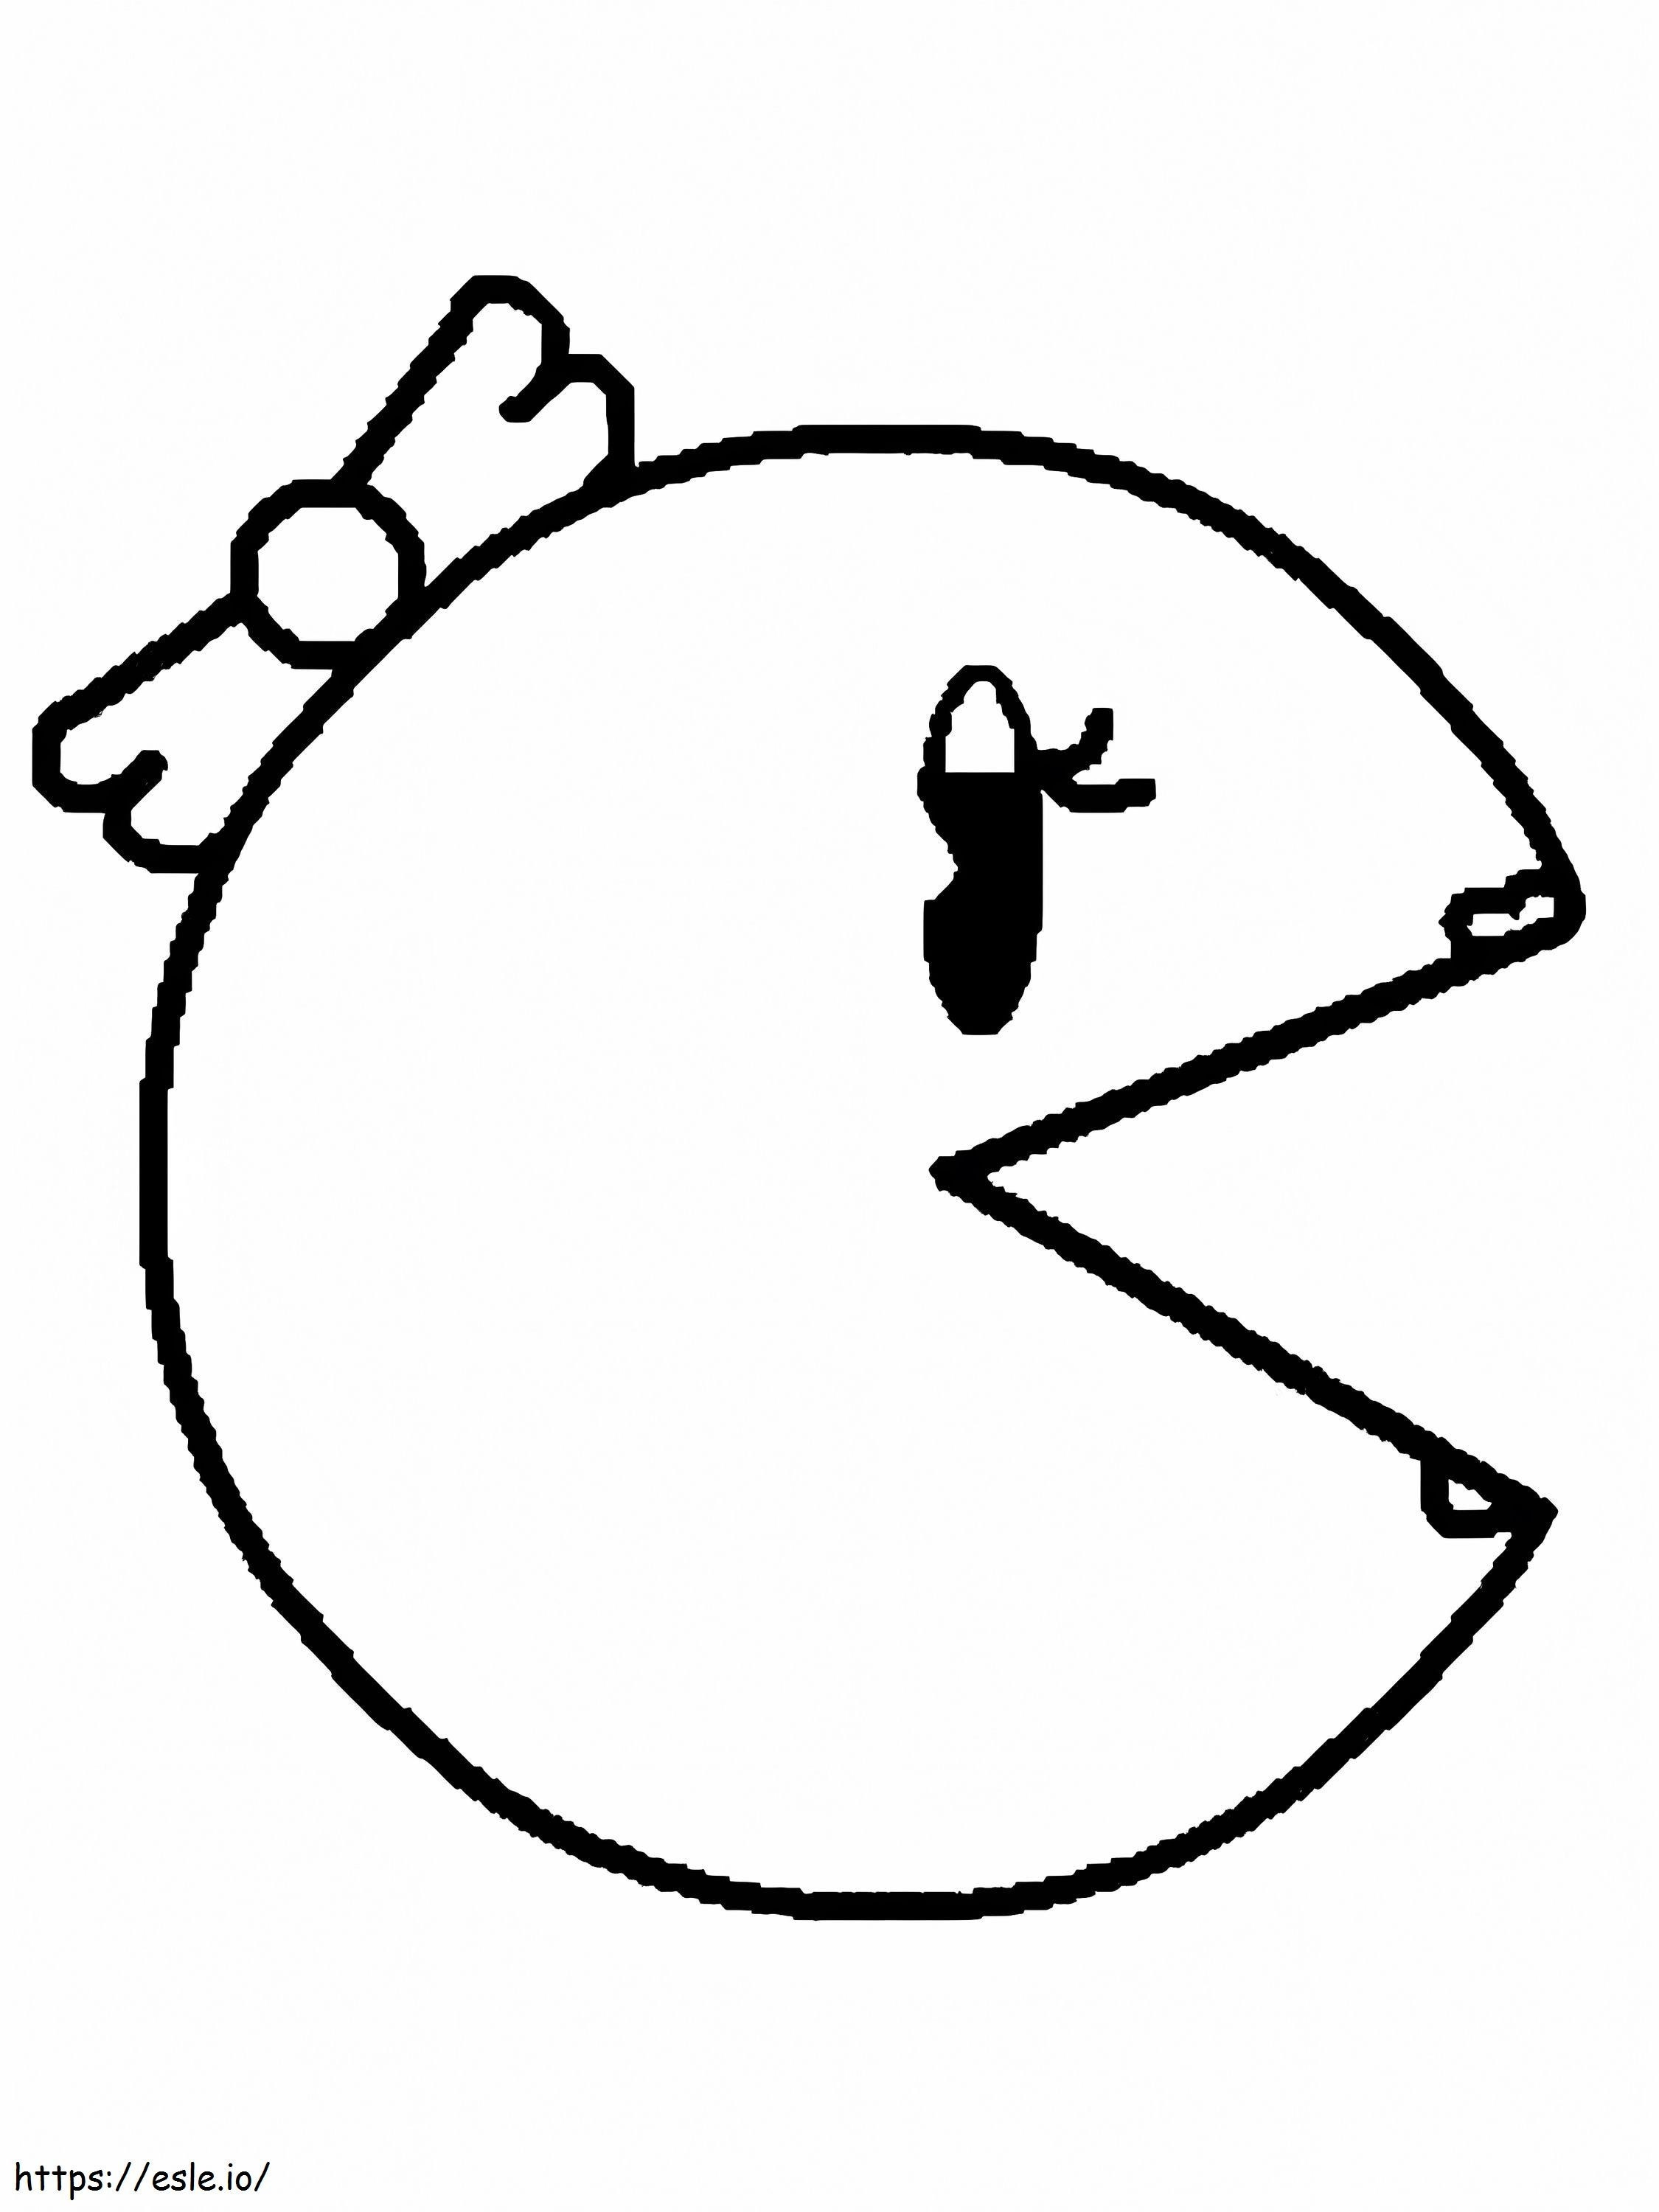 Coloriage Fille Pacman à imprimer dessin